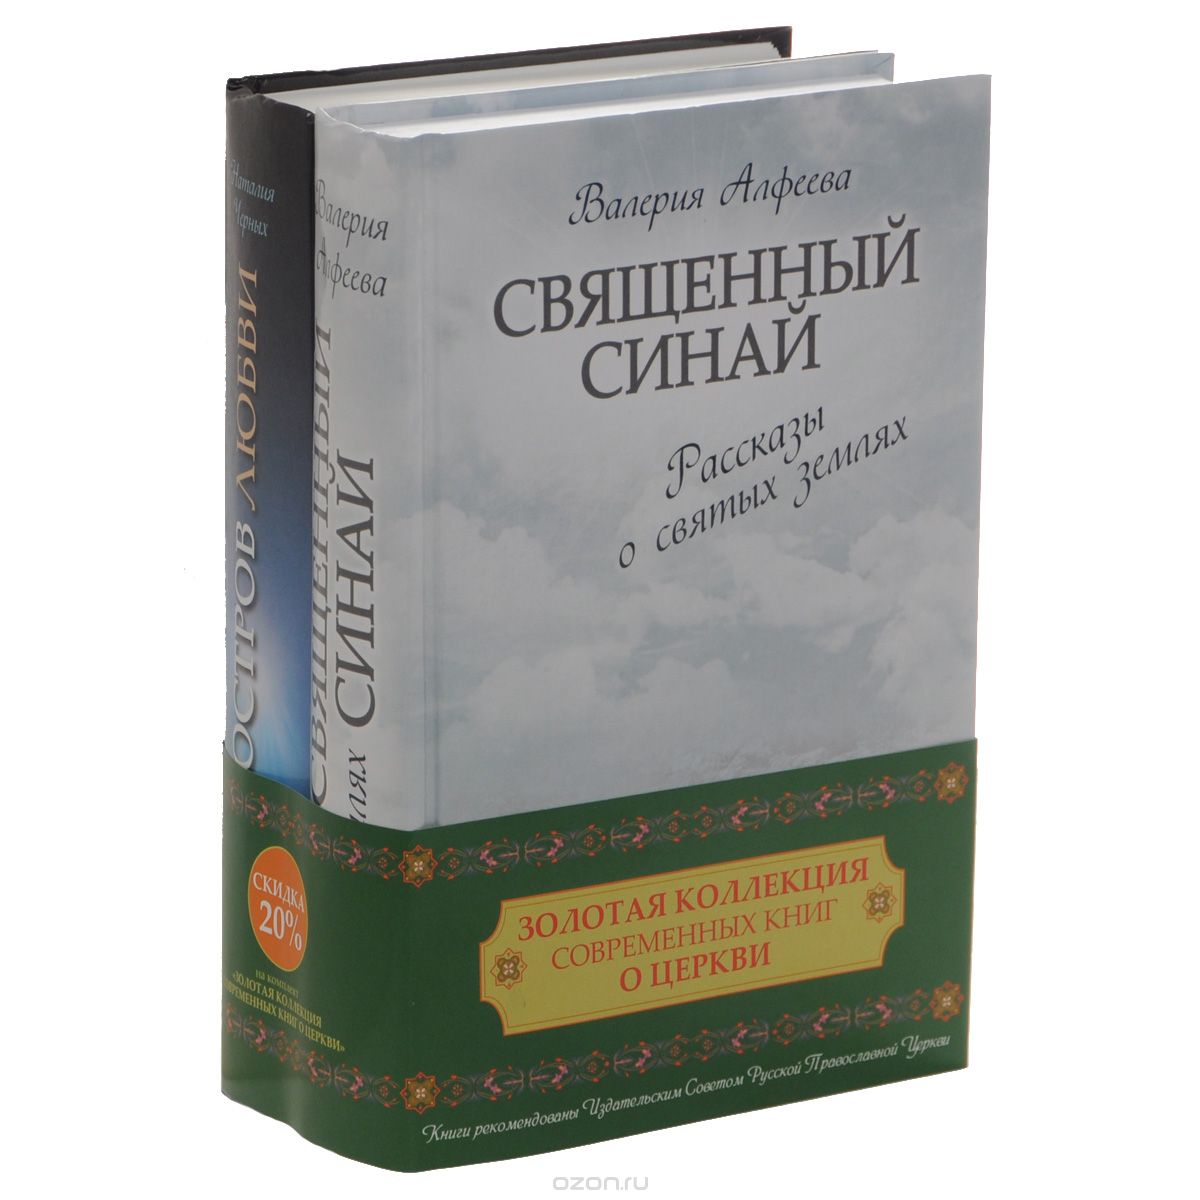 Золотая коллекция современных книг о церкви (комплект из 2 книг), Валерия Алфеева, Наталия Черных